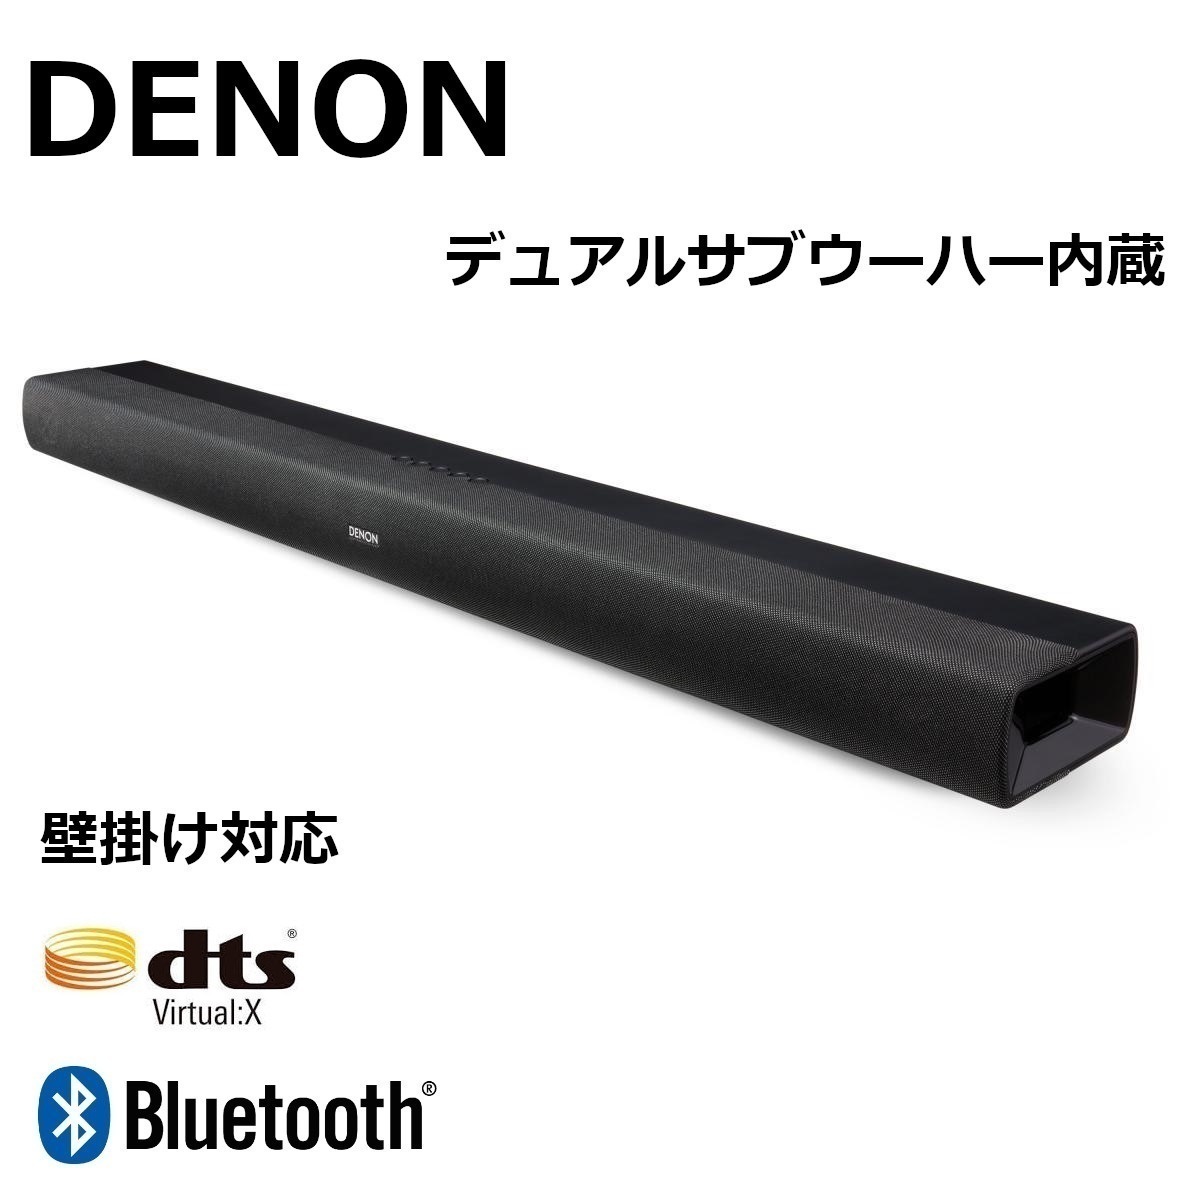 デノン Denon サブウーハー内蔵 サウンドバー DHT-C200 DTS Virtual X Bluetooth対応 ブラック テレビ スピーカー 壁かけ_画像4